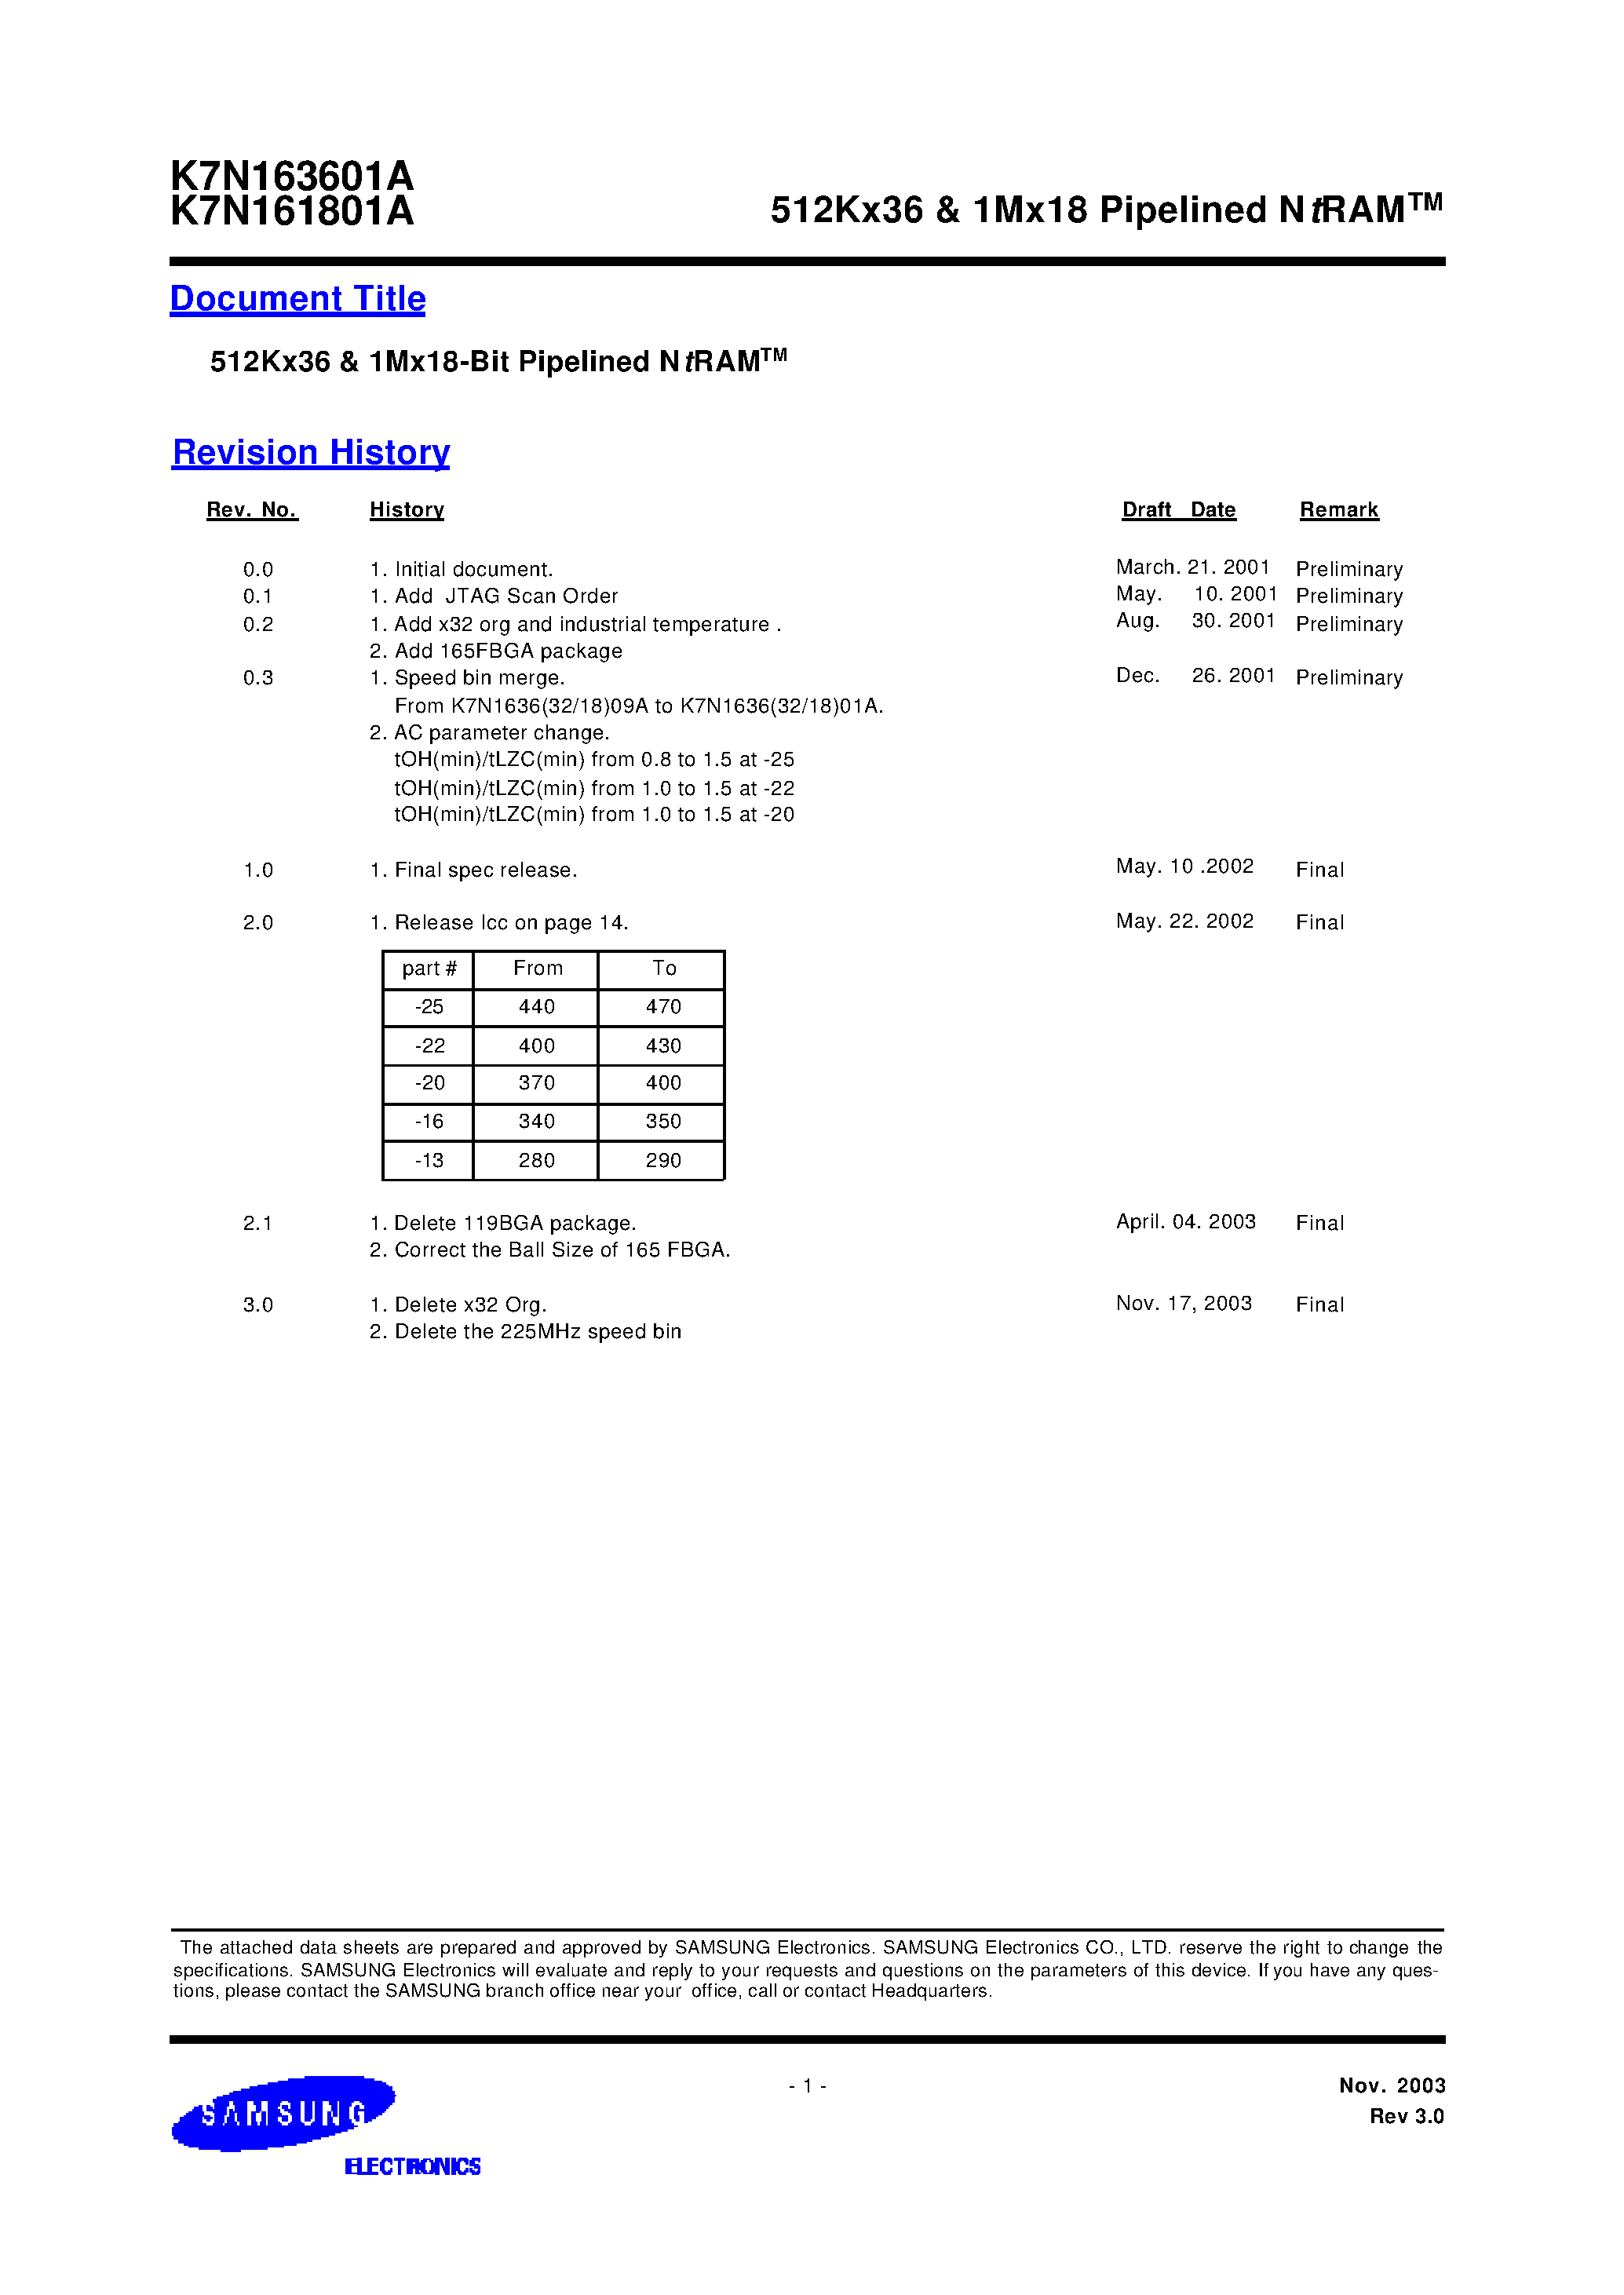 Даташит K7N163645A-Q(F)C(I)16 - 512Kx36 & 1Mx18 Pipelined NtRAM страница 1